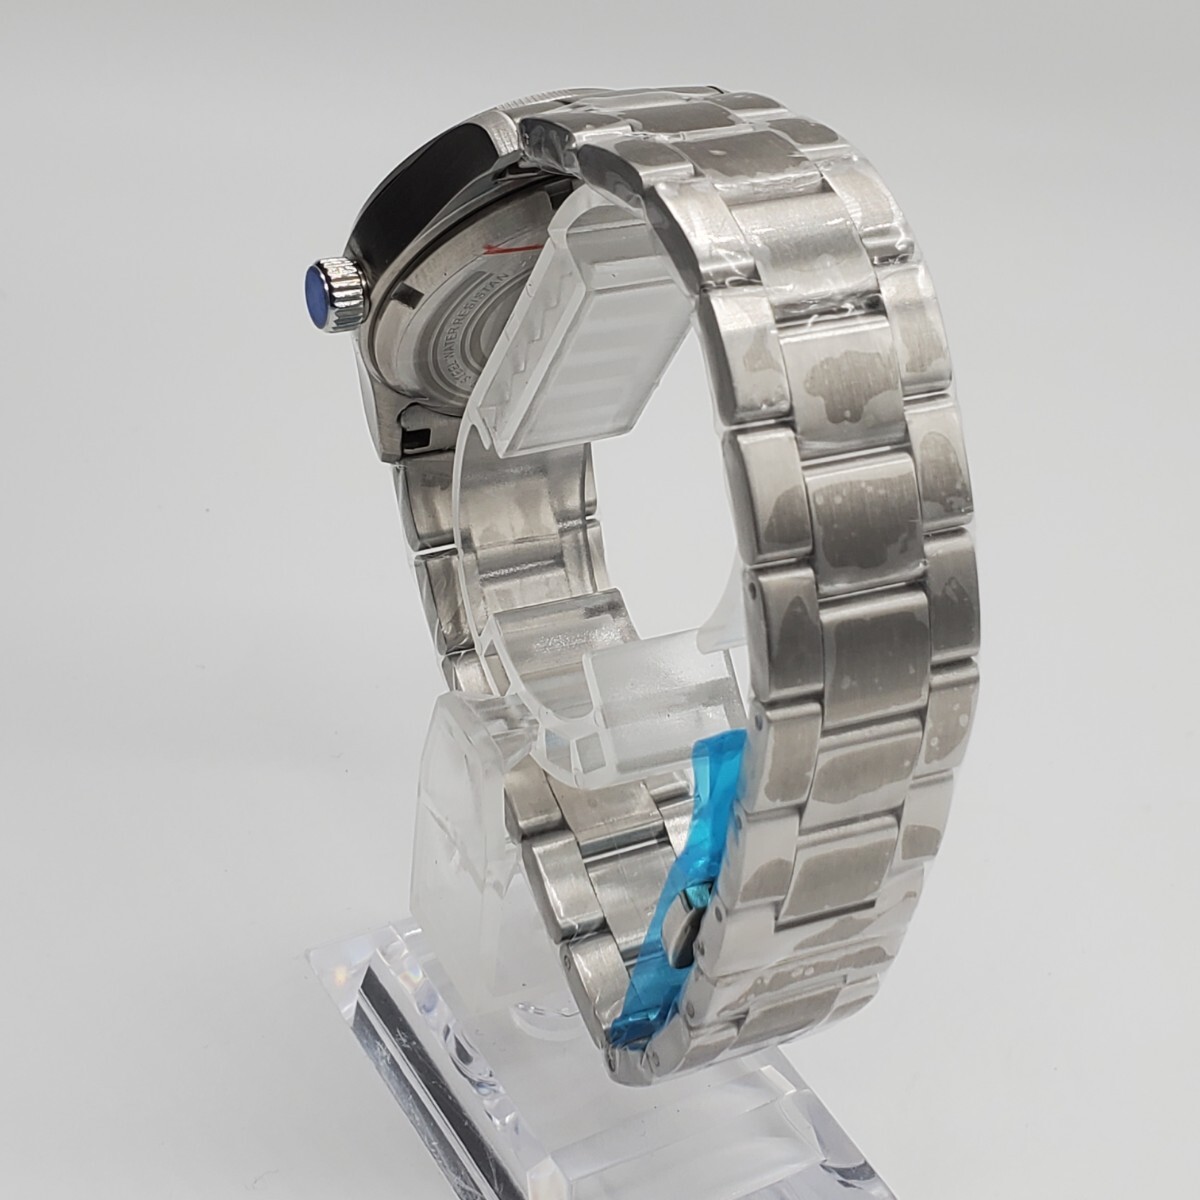  новый товар самозаводящиеся часы Tandoriono- Logo белый циферблат NH35 мужские наручные часы автоматический высококлассный сапфир защита от ветра 36mm